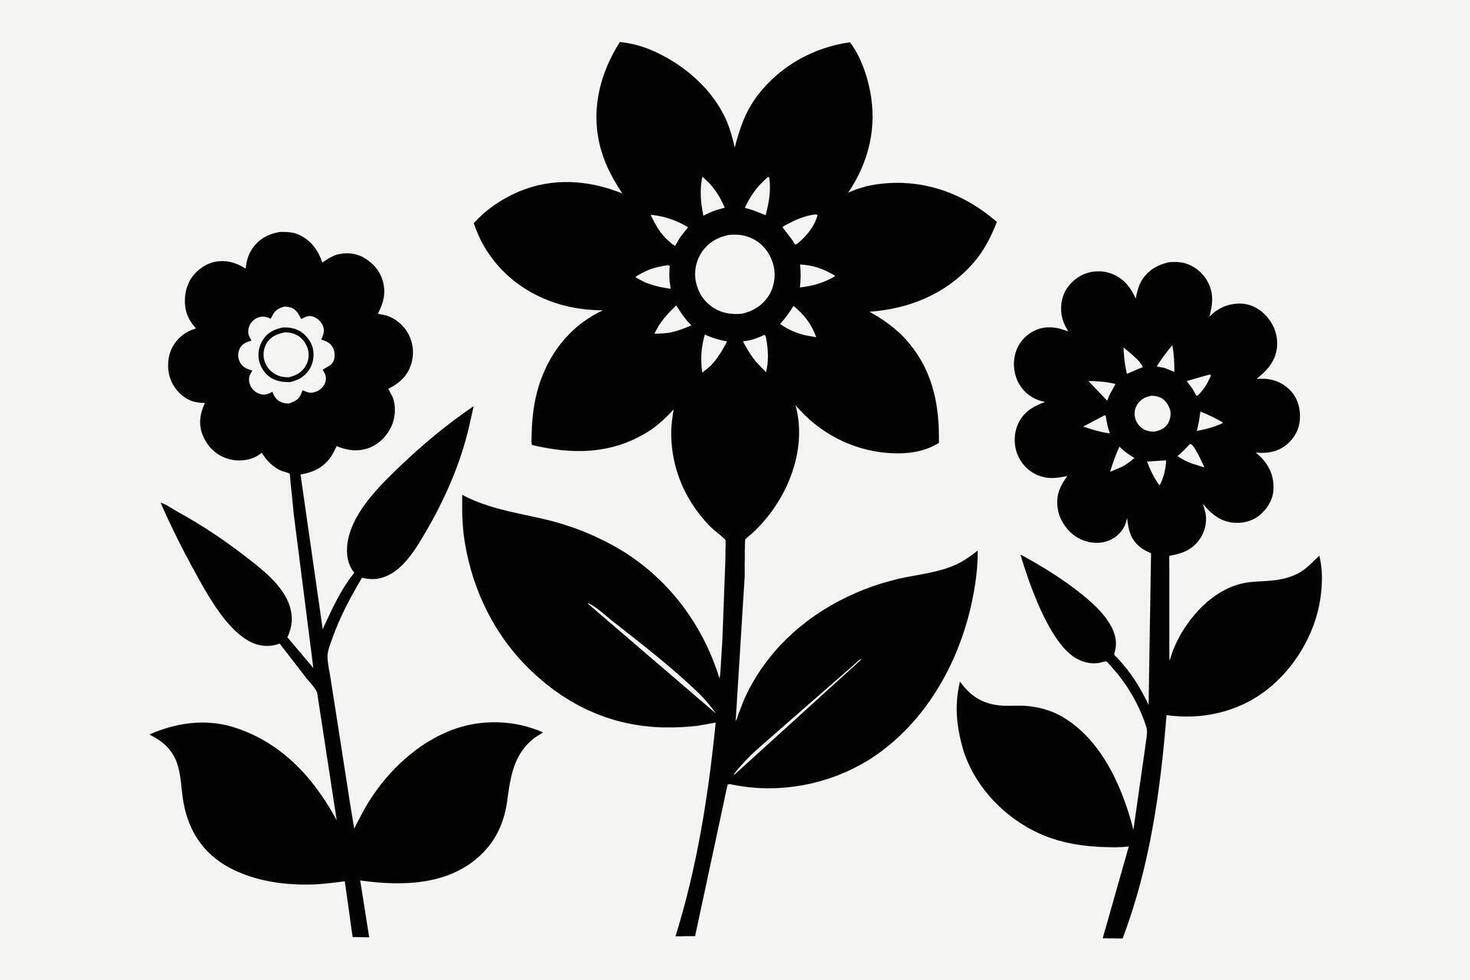 zwart uitknippen symbolen van bloemen vector